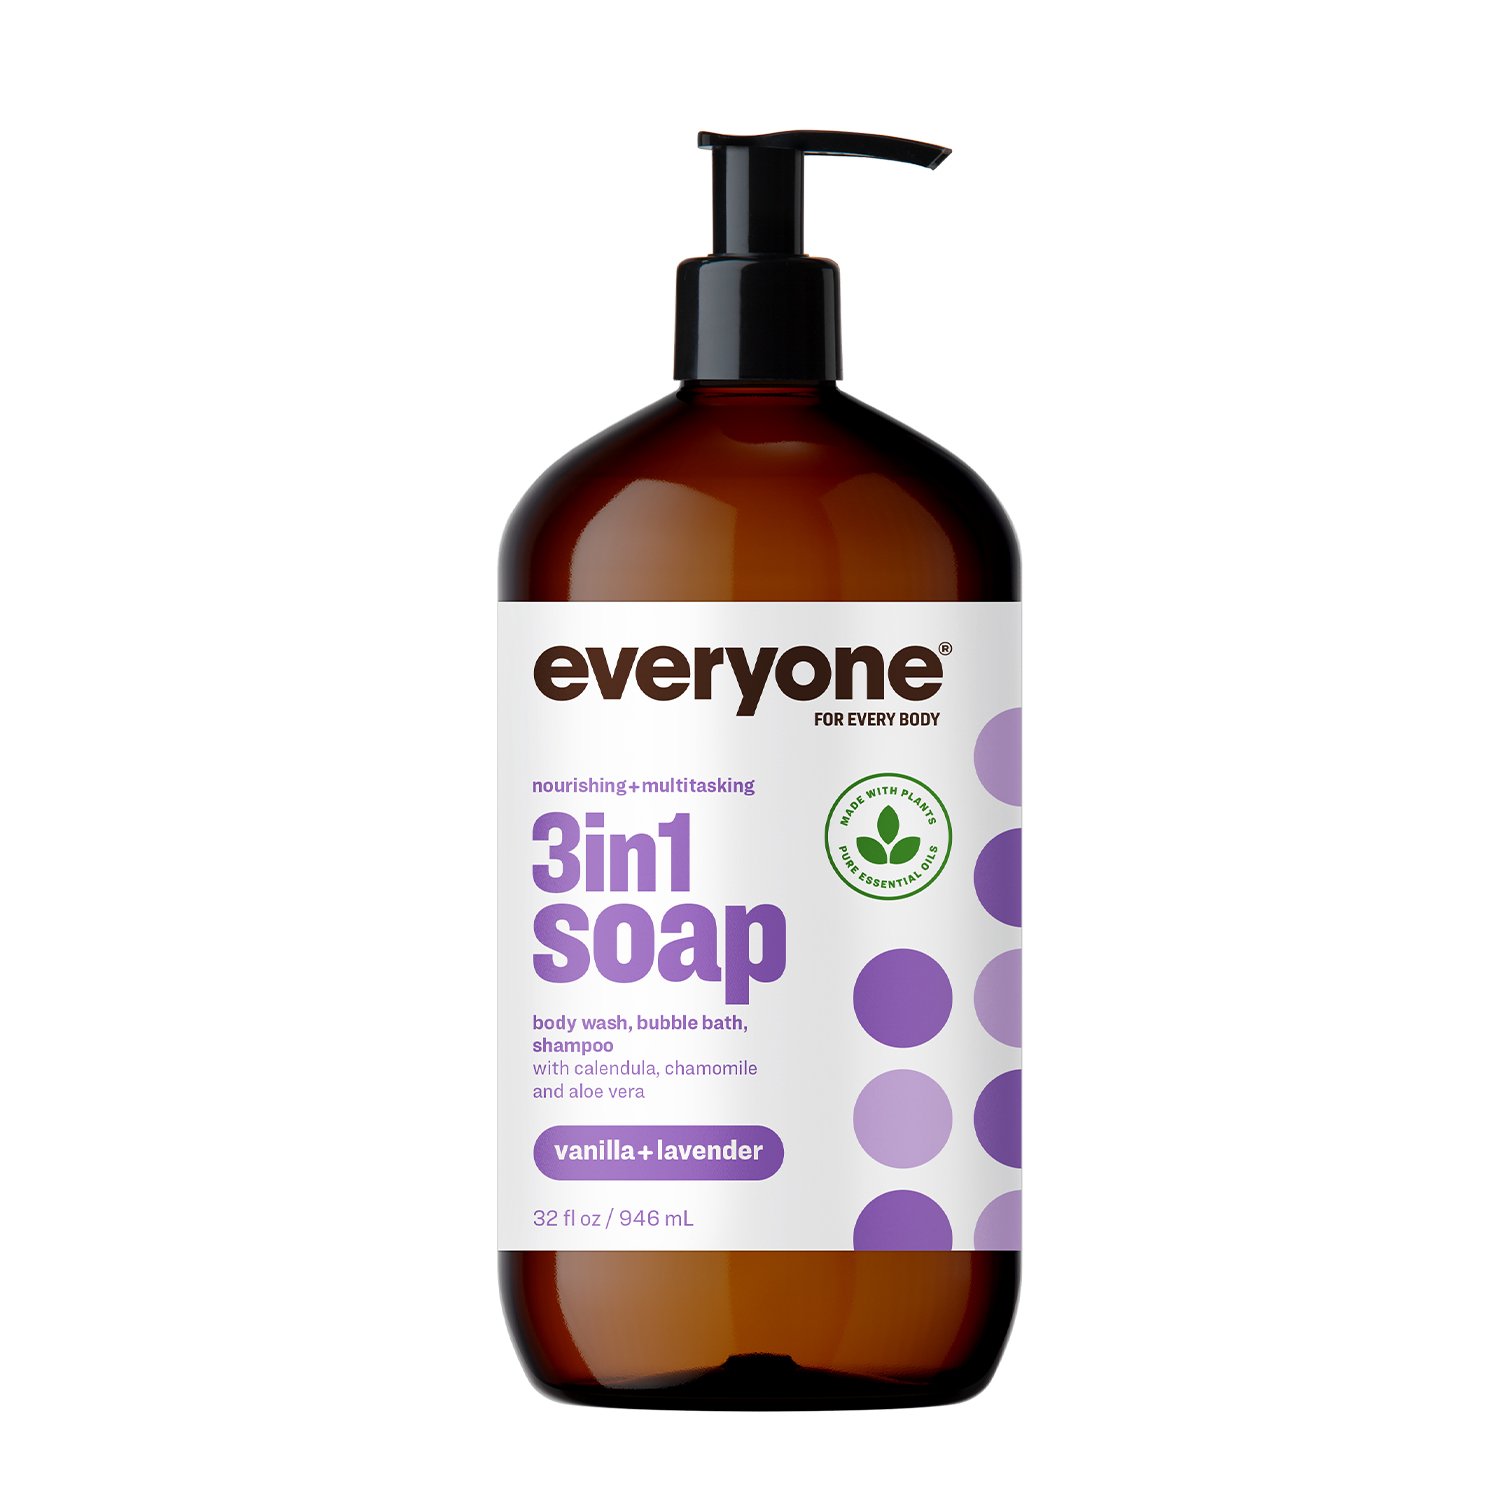 Everyone 3in1 Body Wash Bubble Bath And Shampoo Vanilla Lavender Shop Body Wash At H E B